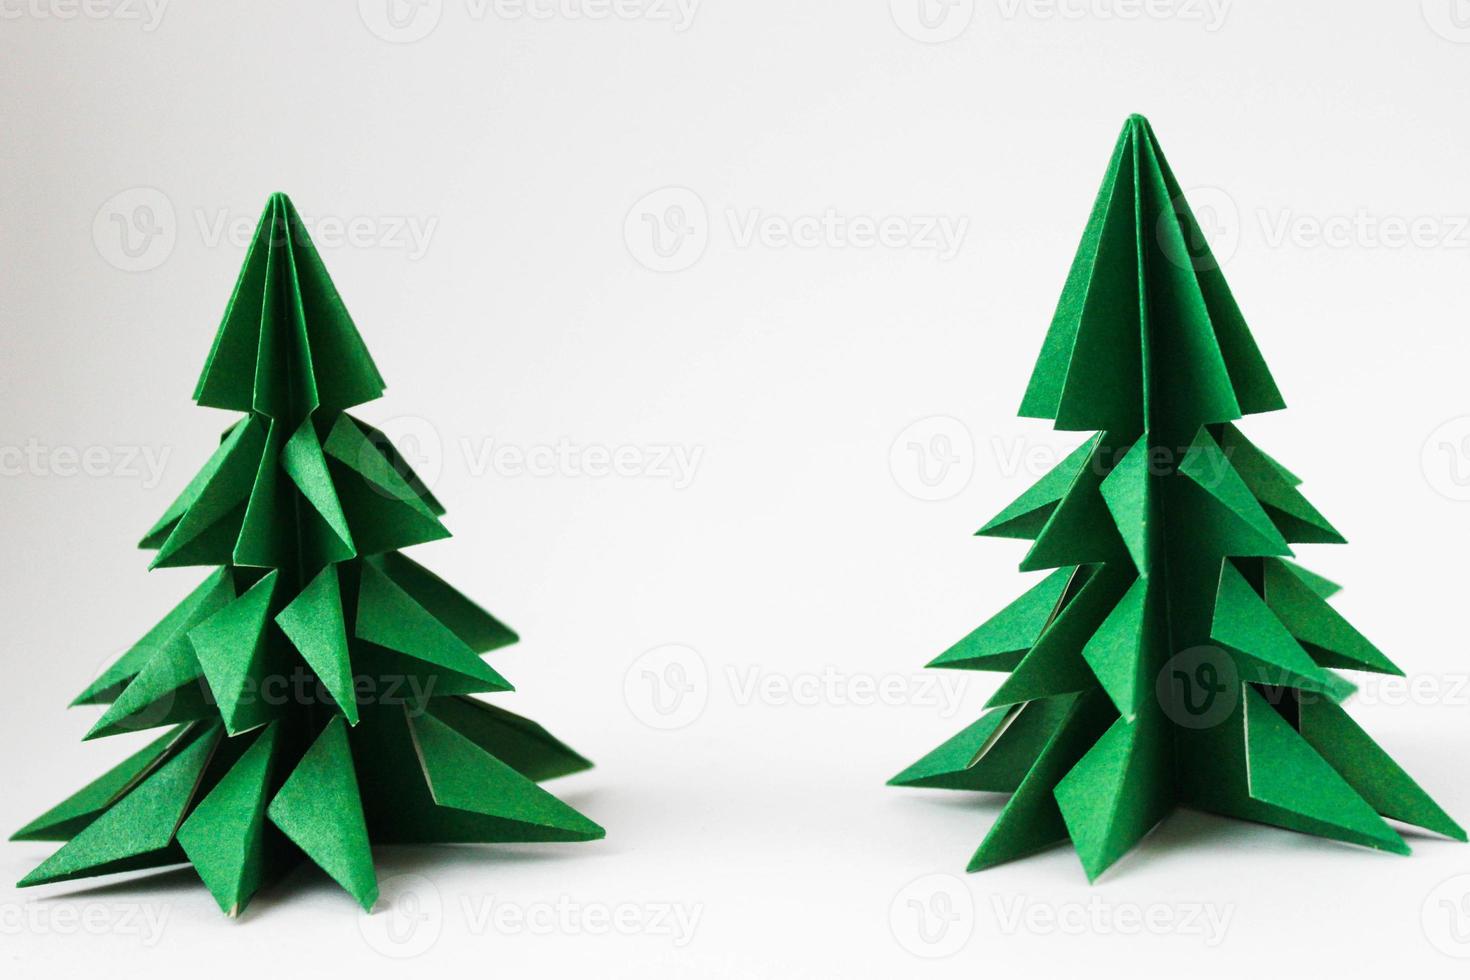 dos árboles de navidad de origami verde sobre fondo blanco. foto